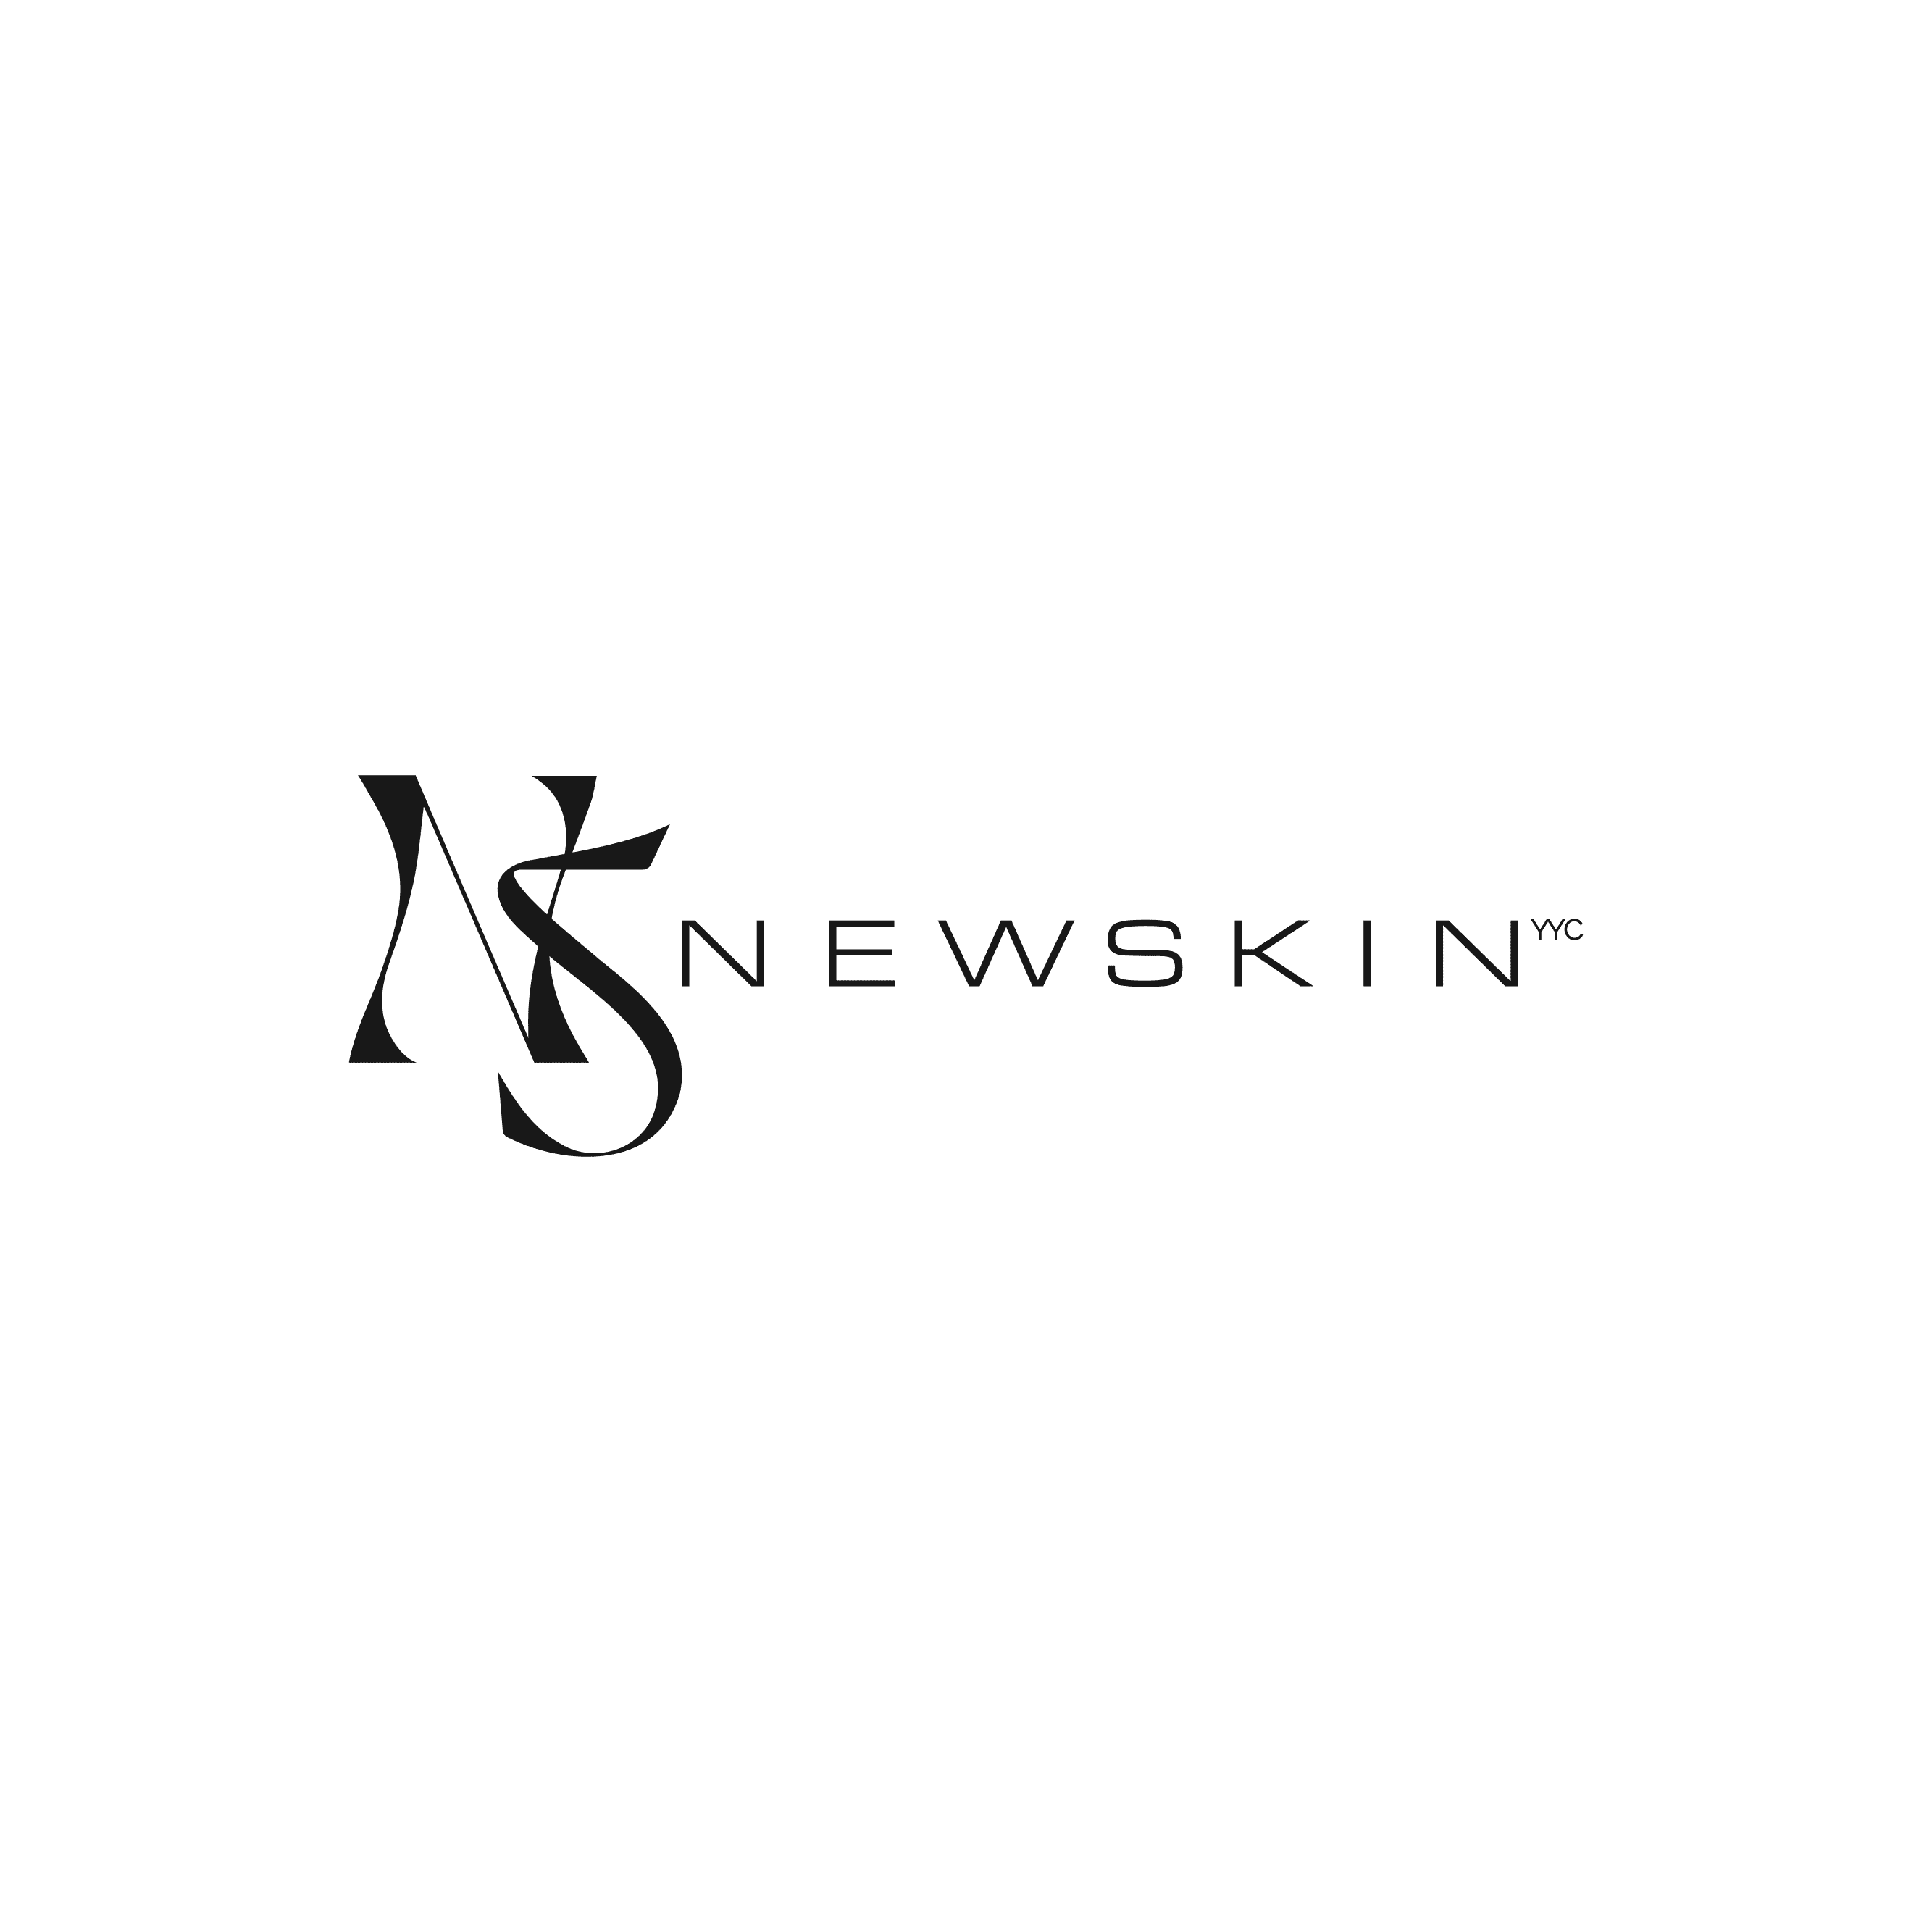 NewSkinYYC_Logo